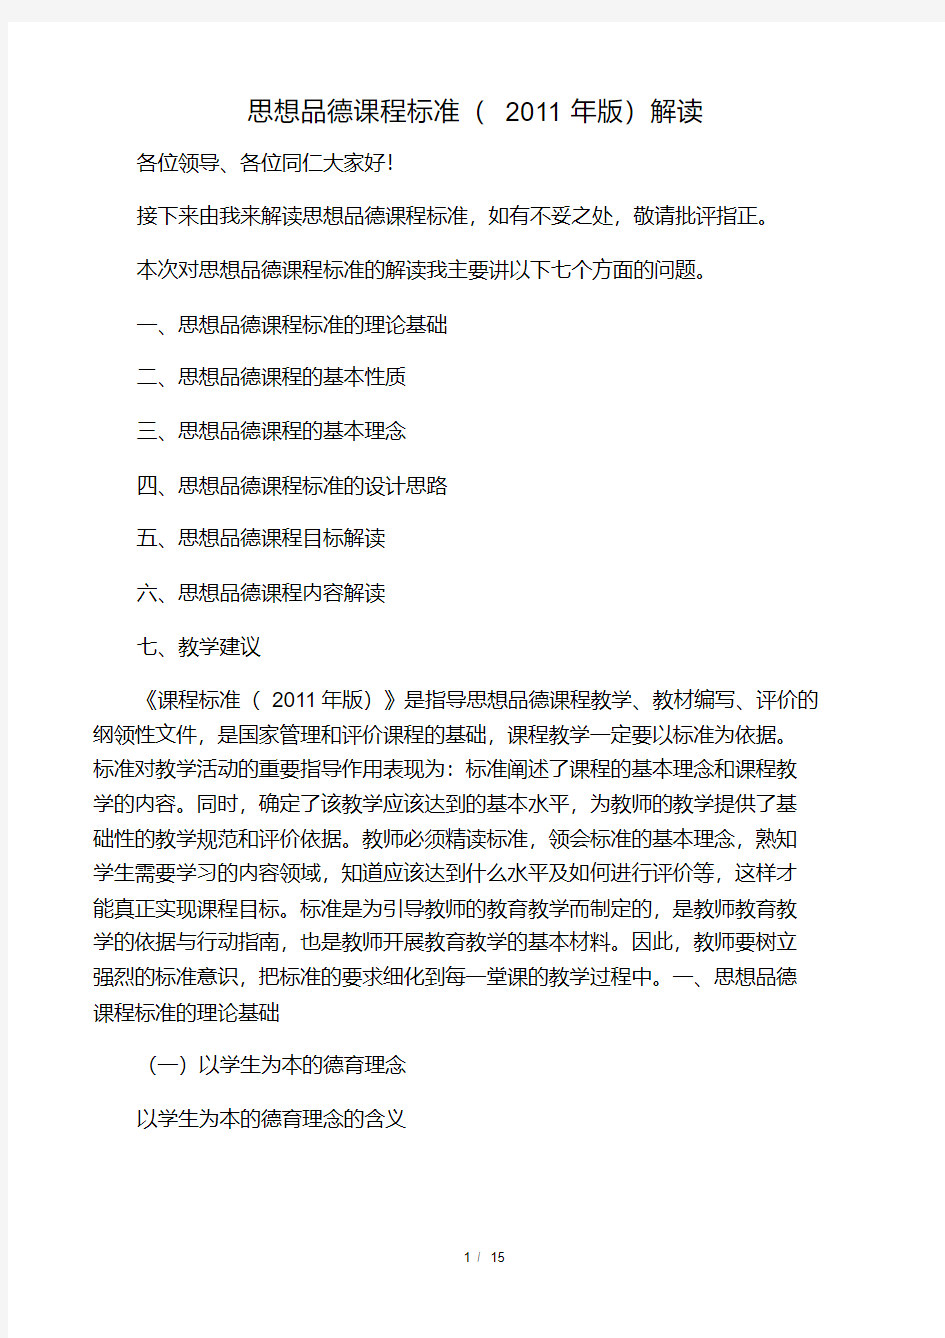 初中思想品德课程标准(2011版).pdf